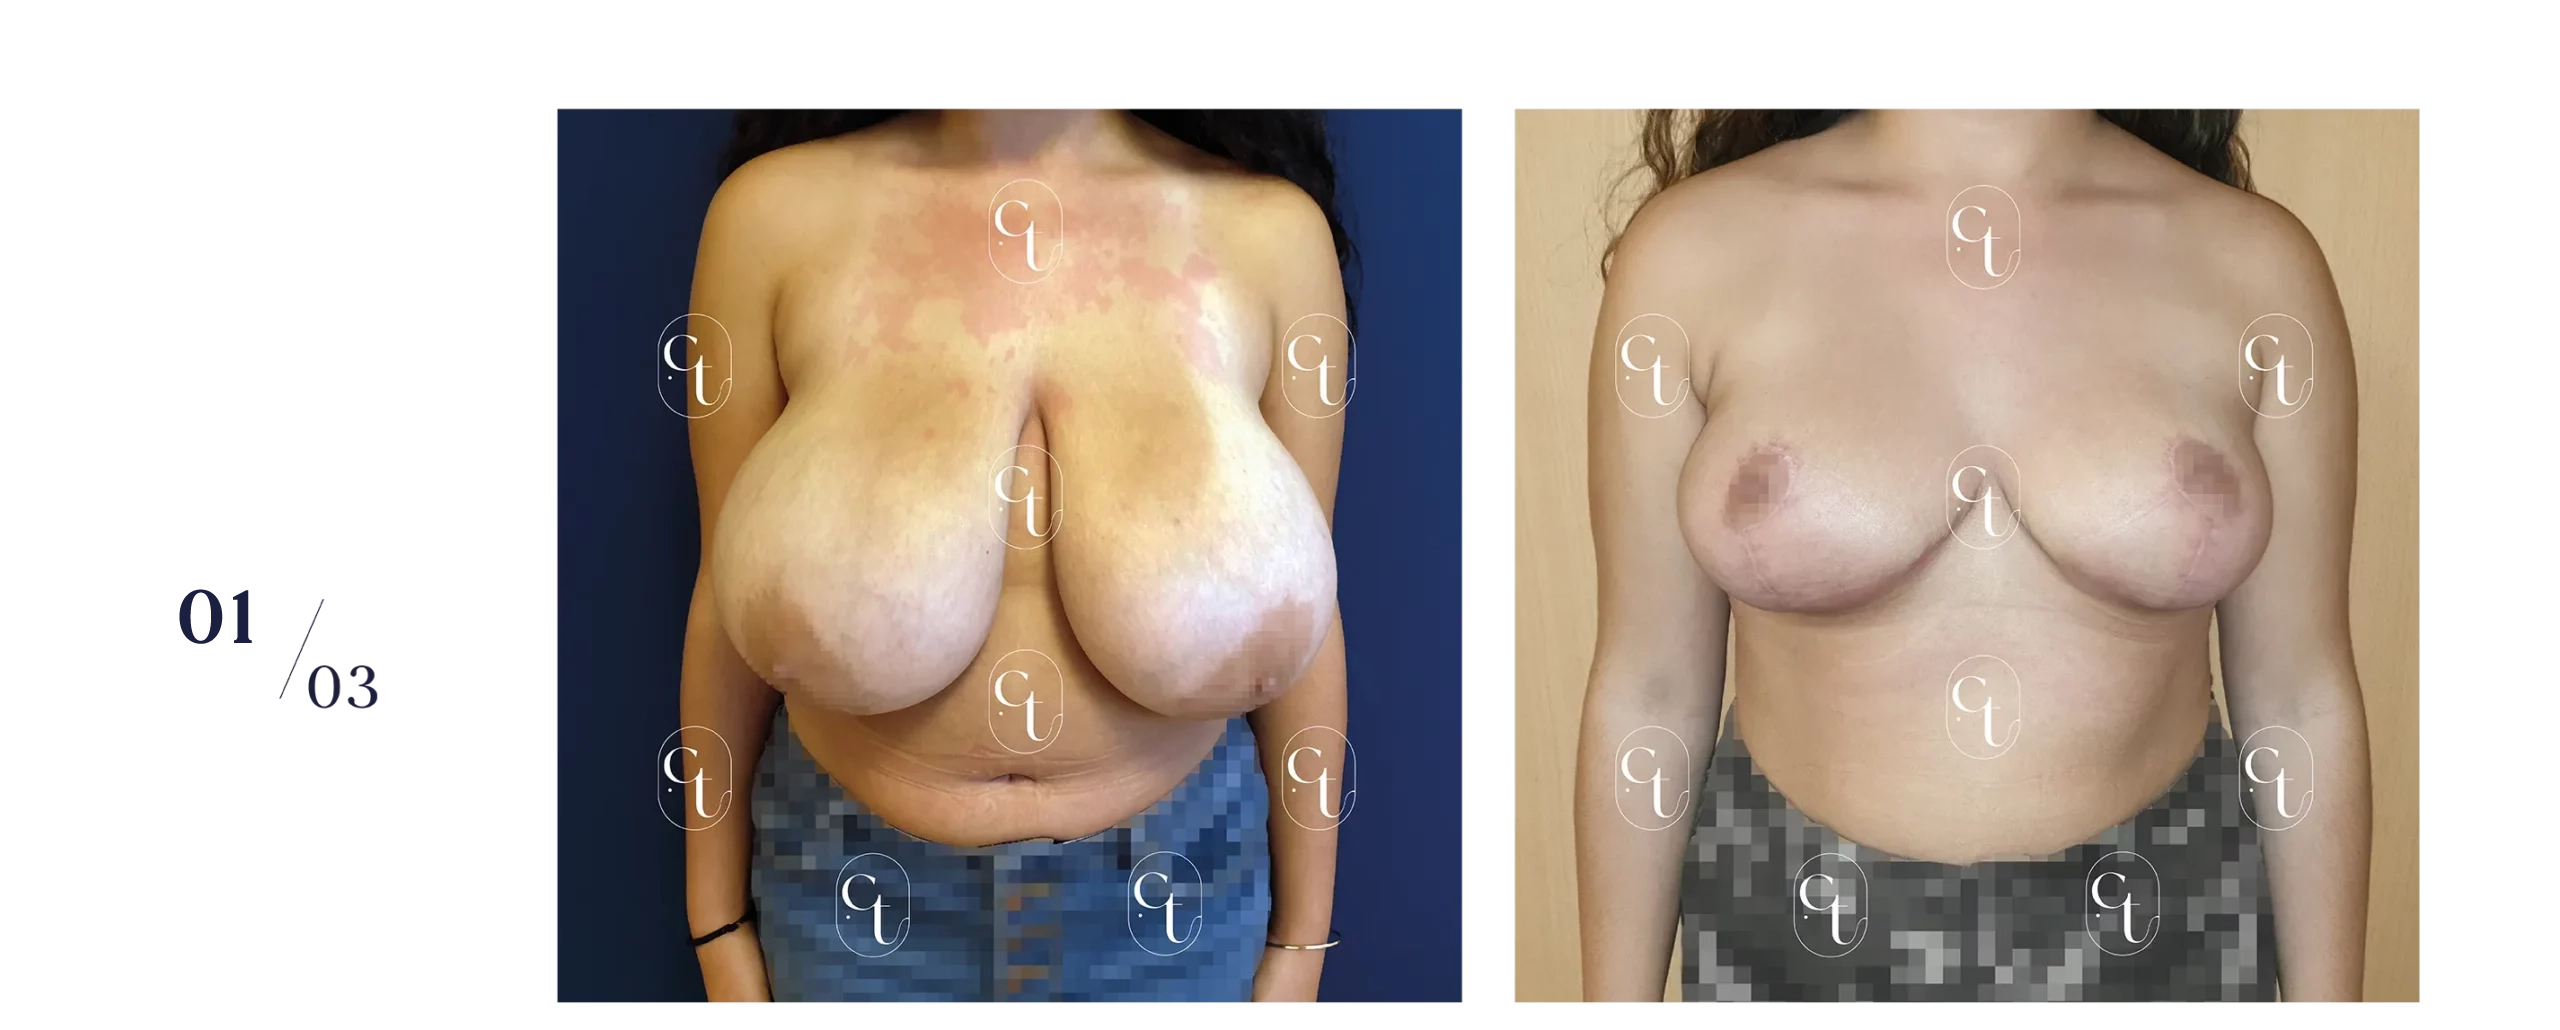 Résultat à 1,5 mois d'une réduction mammaire bilatérale chez une patiente de 16 ans. Plus de 300 grammes par sein ont été retirés : l'intervention est prise en charge par l'Assurance Maladie.